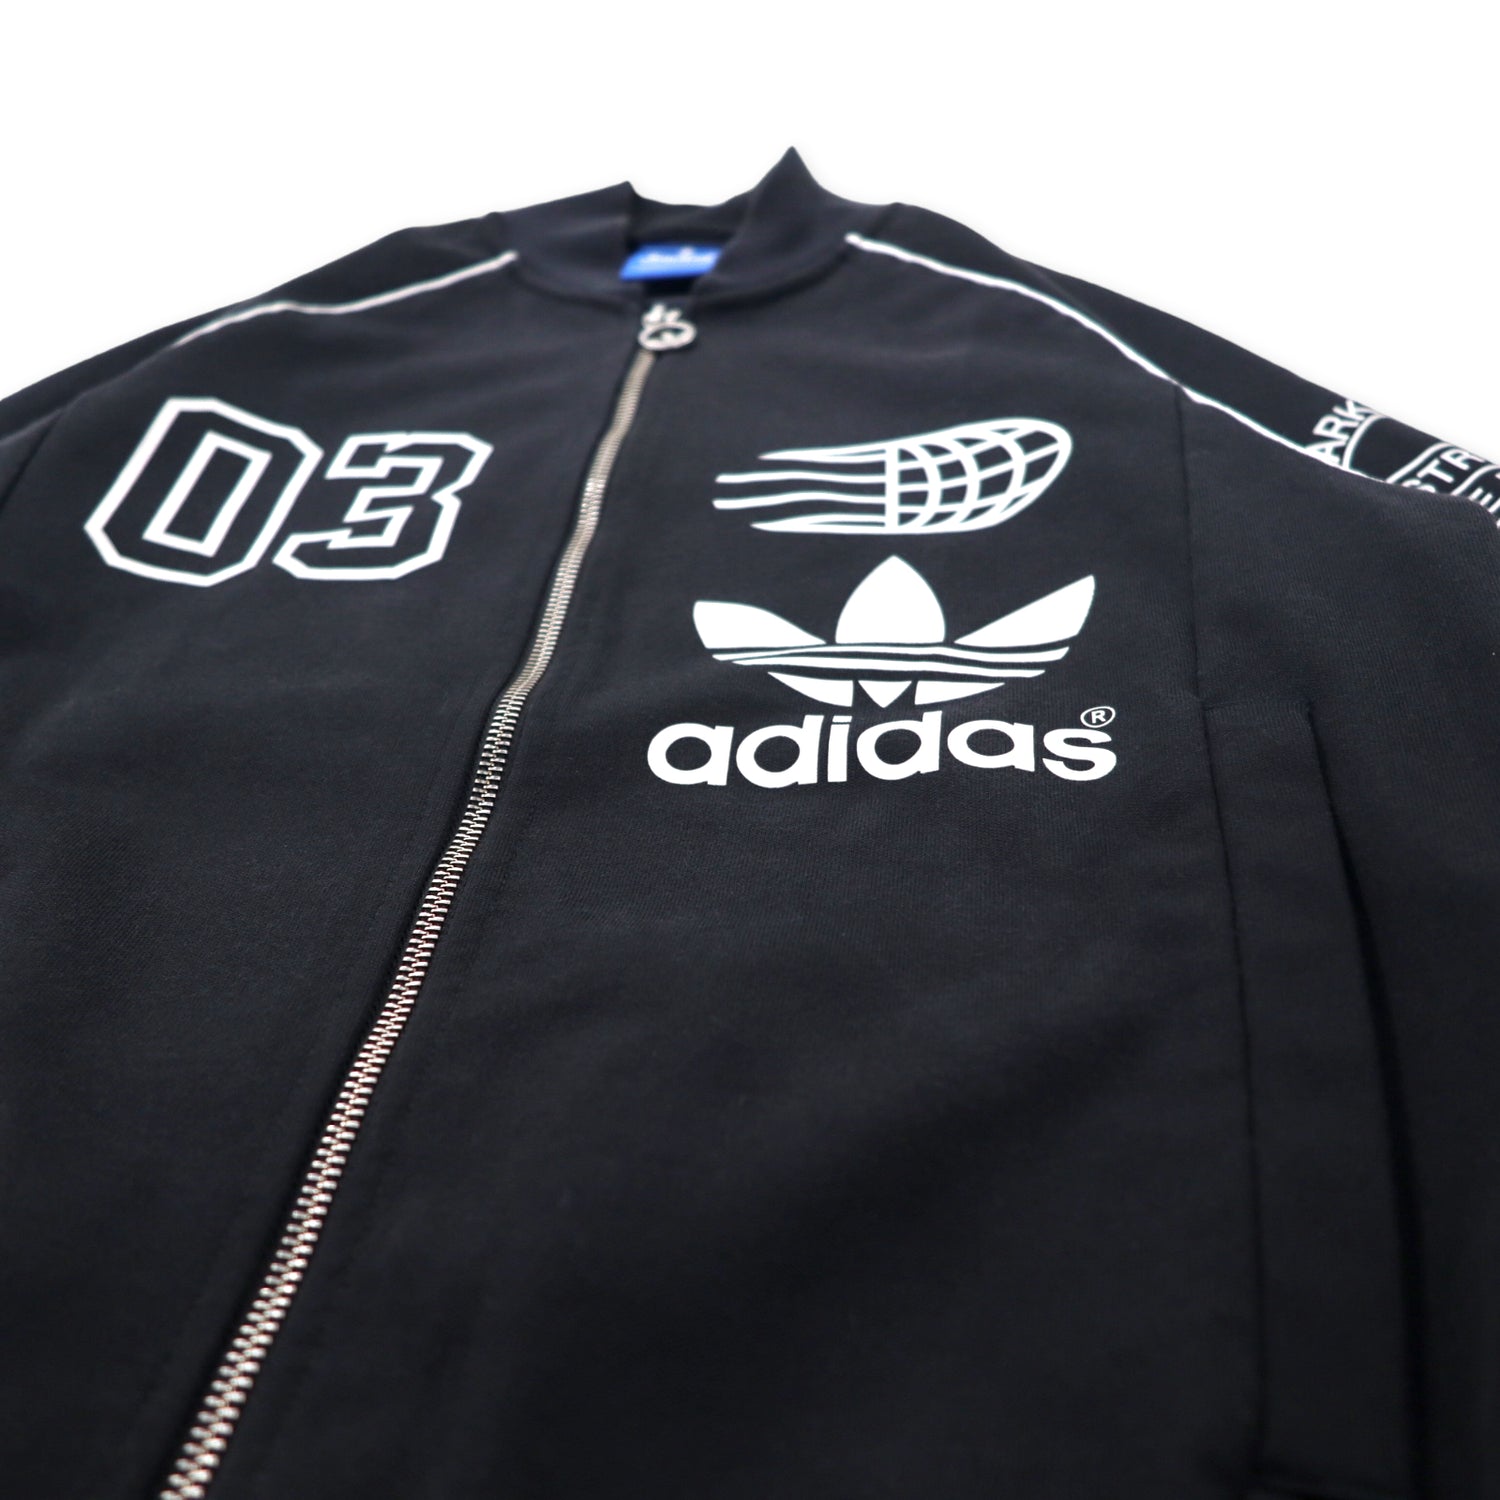 Adidas Originals Super Star Rogos TRACKET Jersey L Black Polyester Trefoil  Logo ATP type SST TT LOGOS S18723